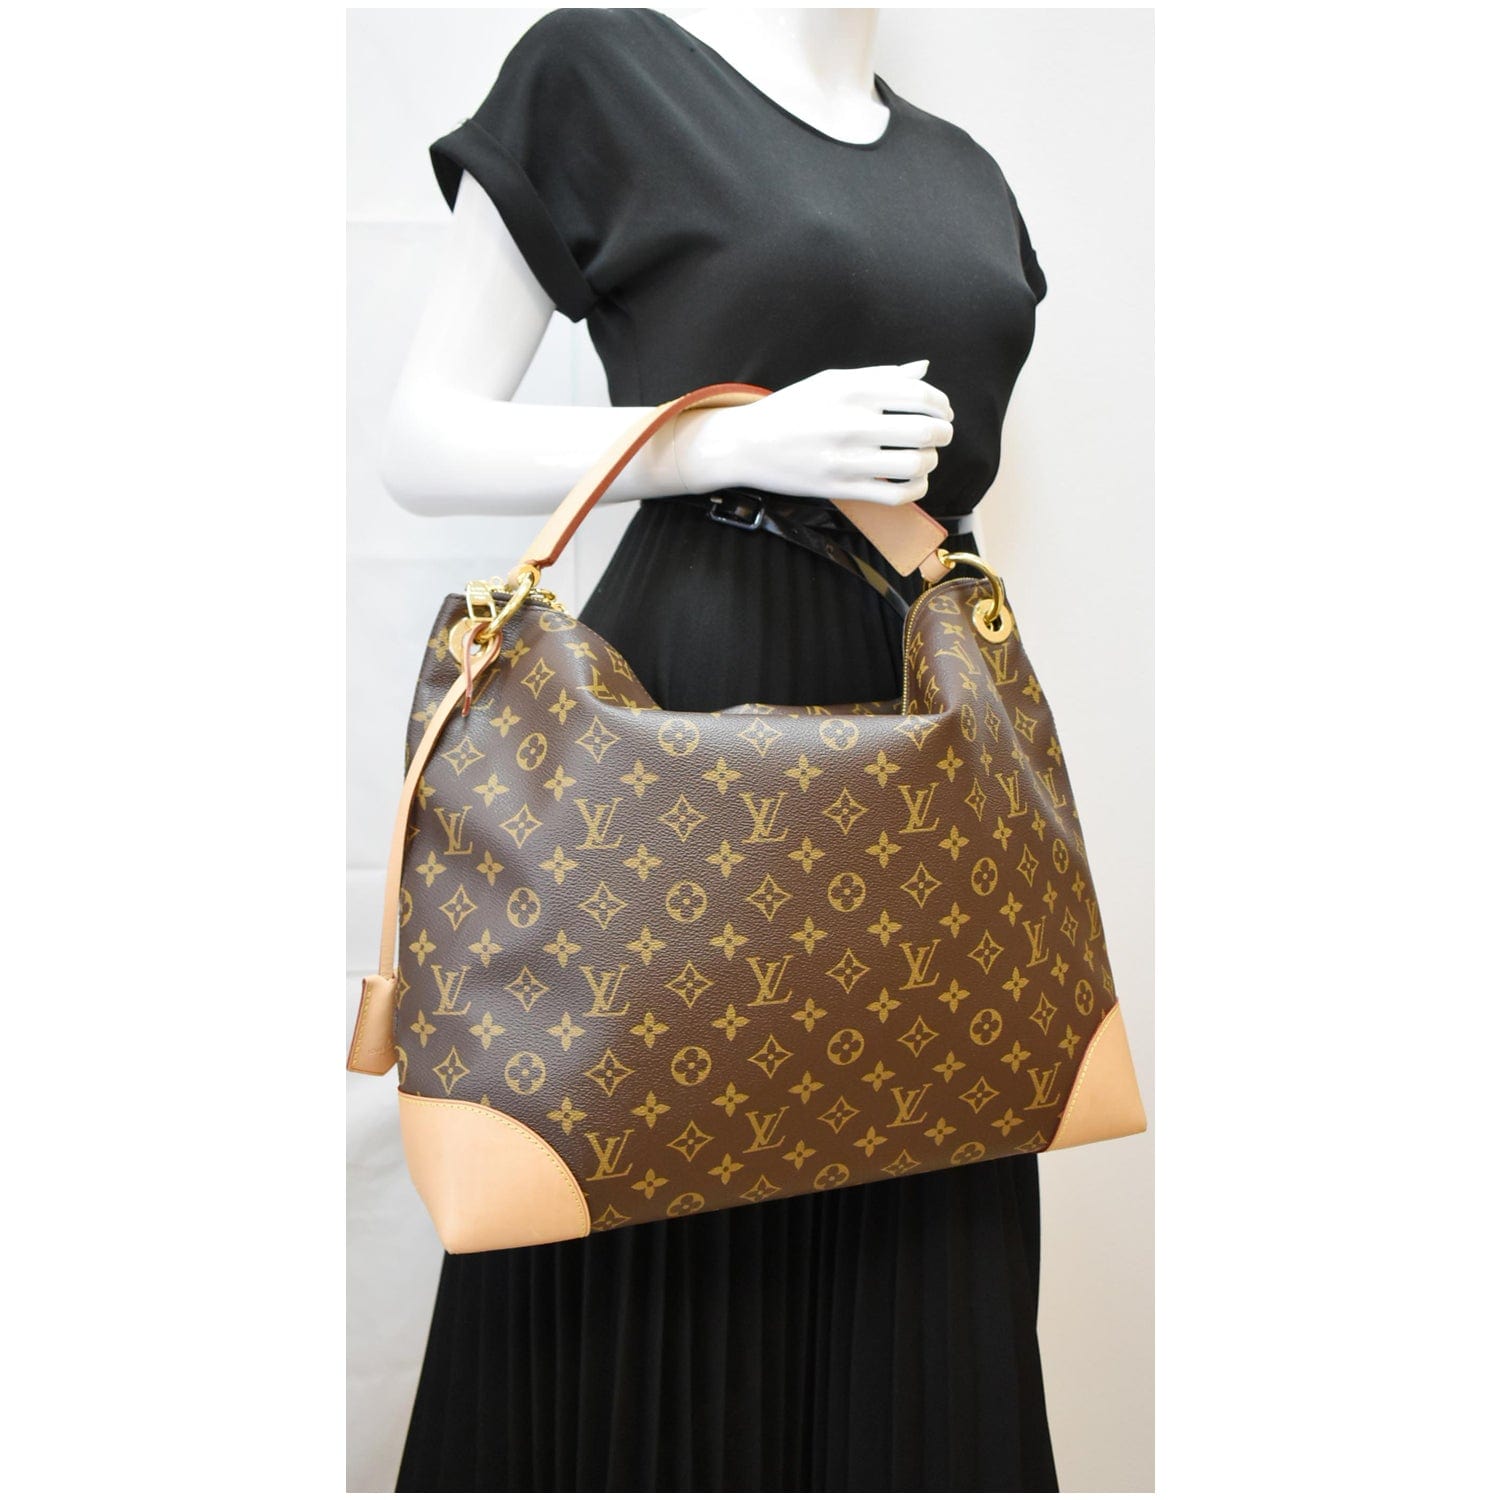 LOUIS VUITTON Monogram Shoulder Bag Berri PM M41623 Brown /350516